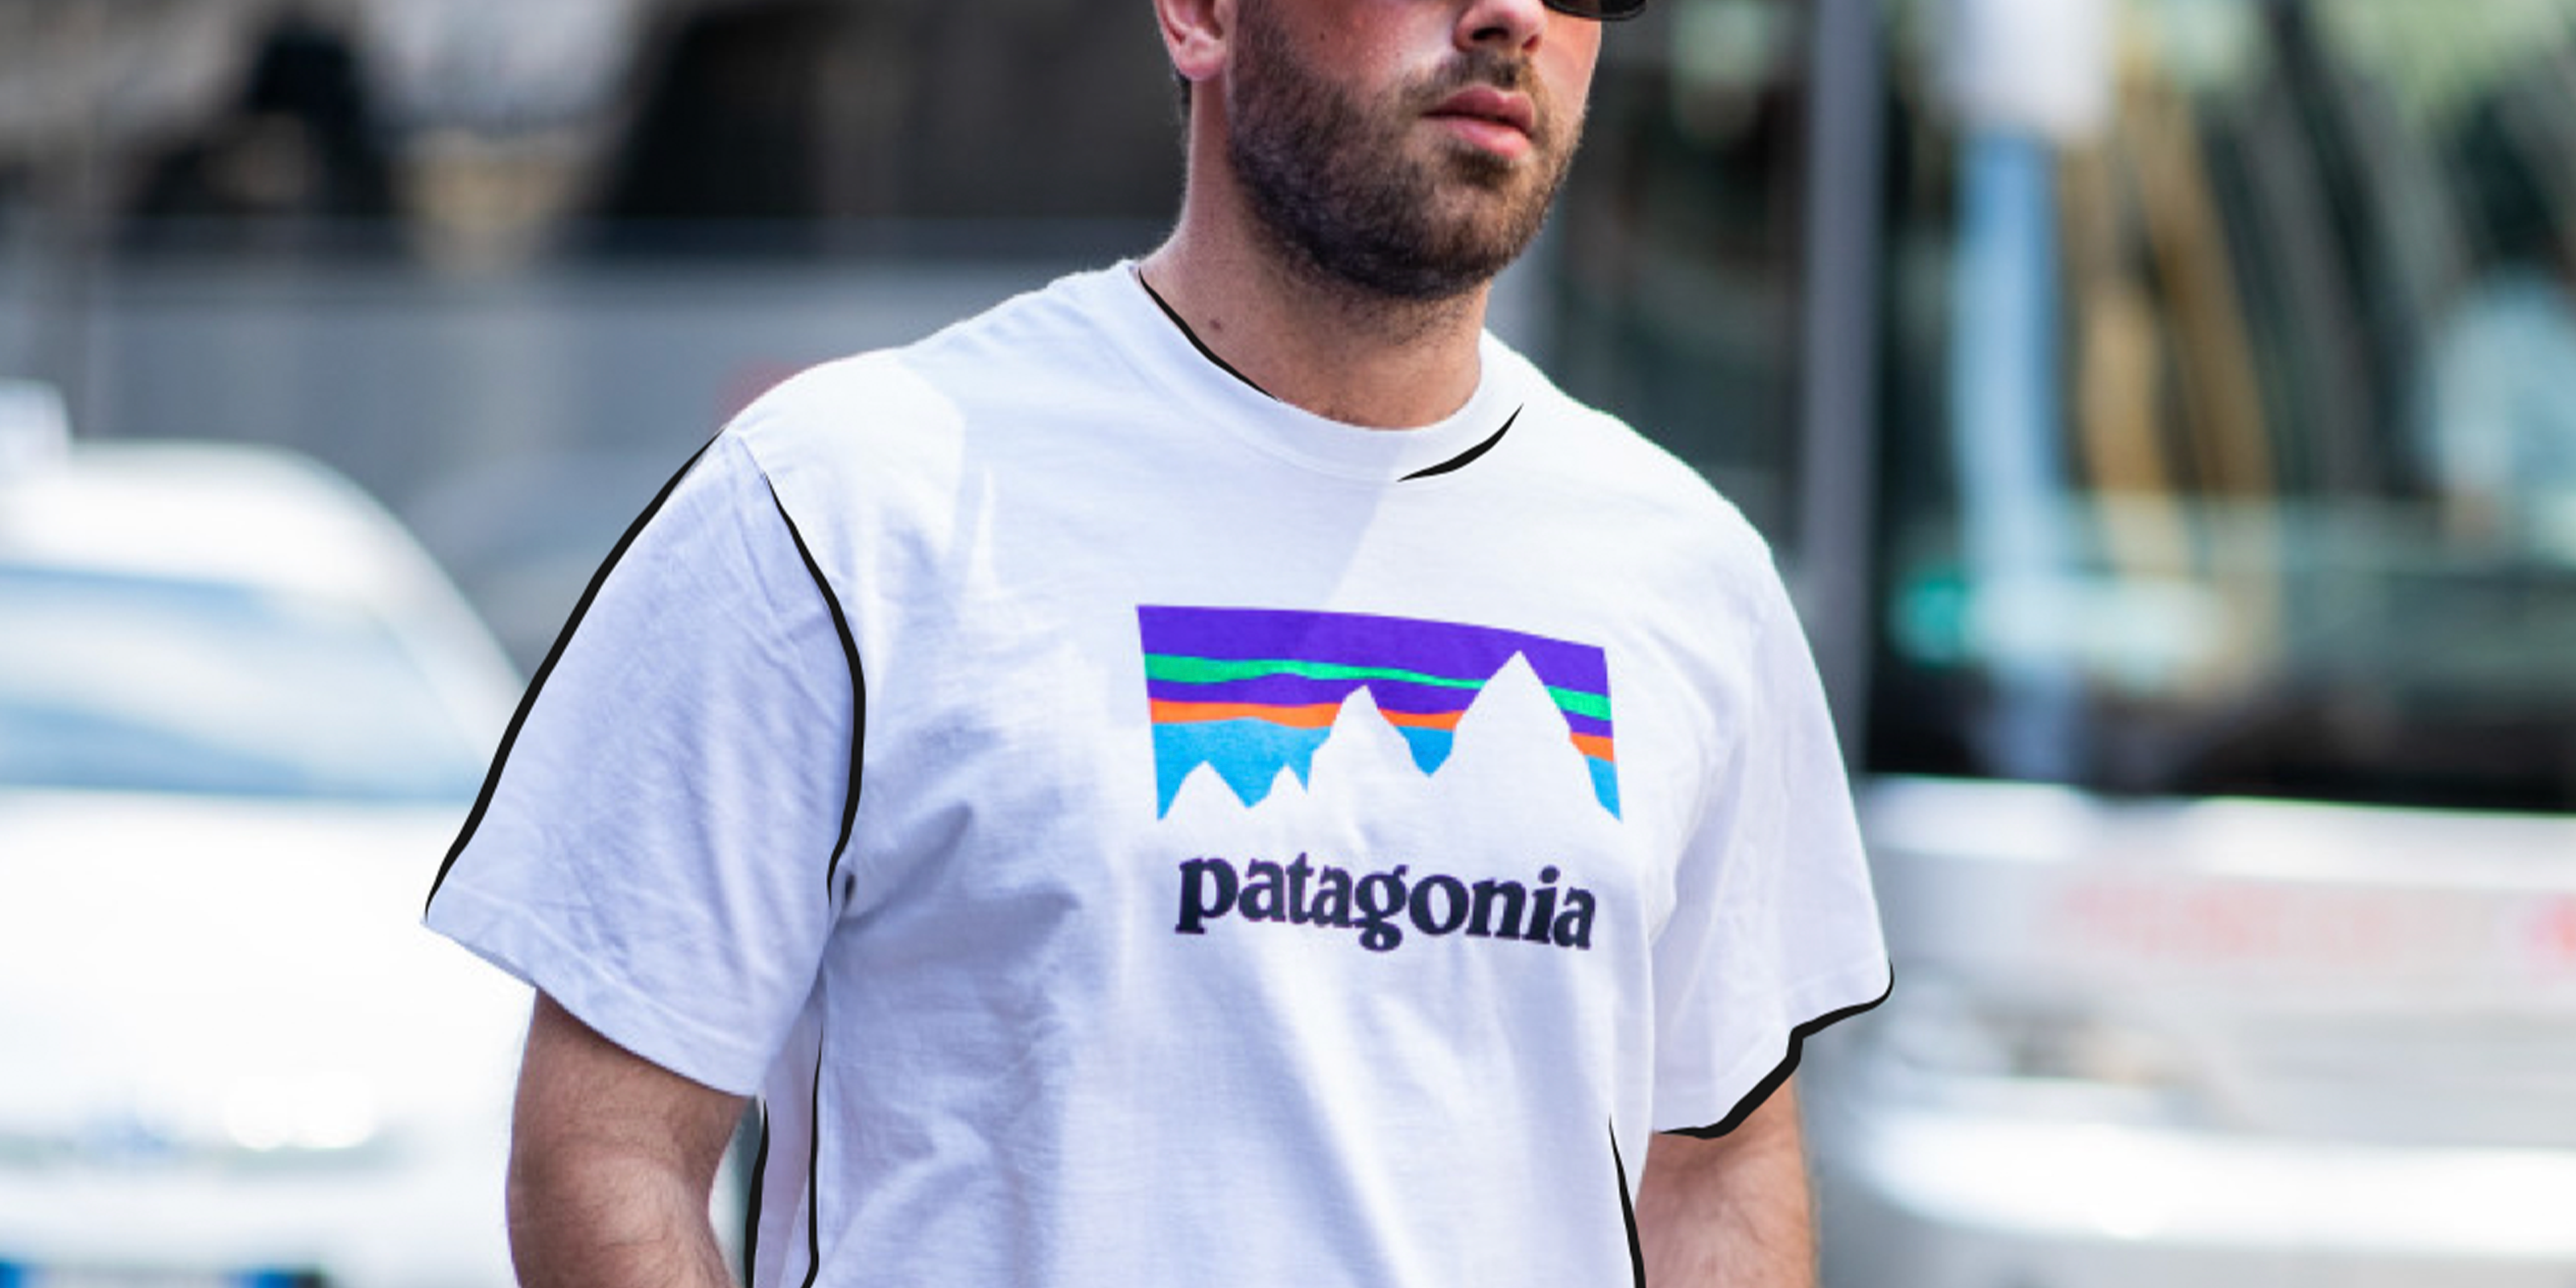 Patagonia tee shirt